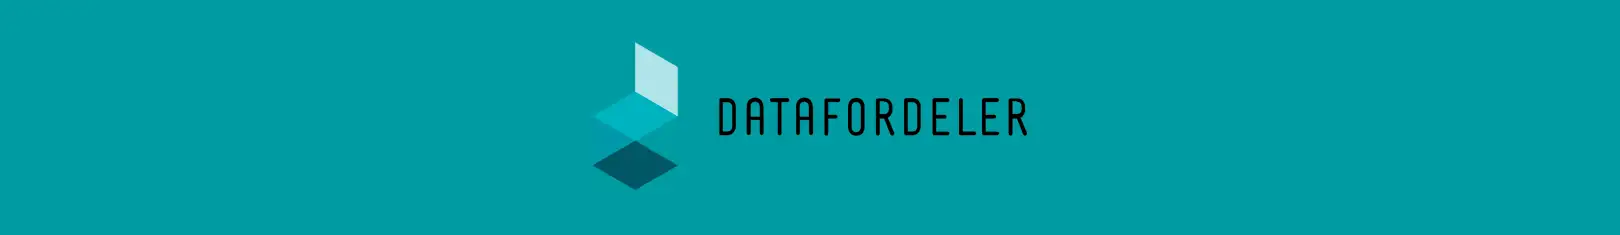 Datafordeler logo